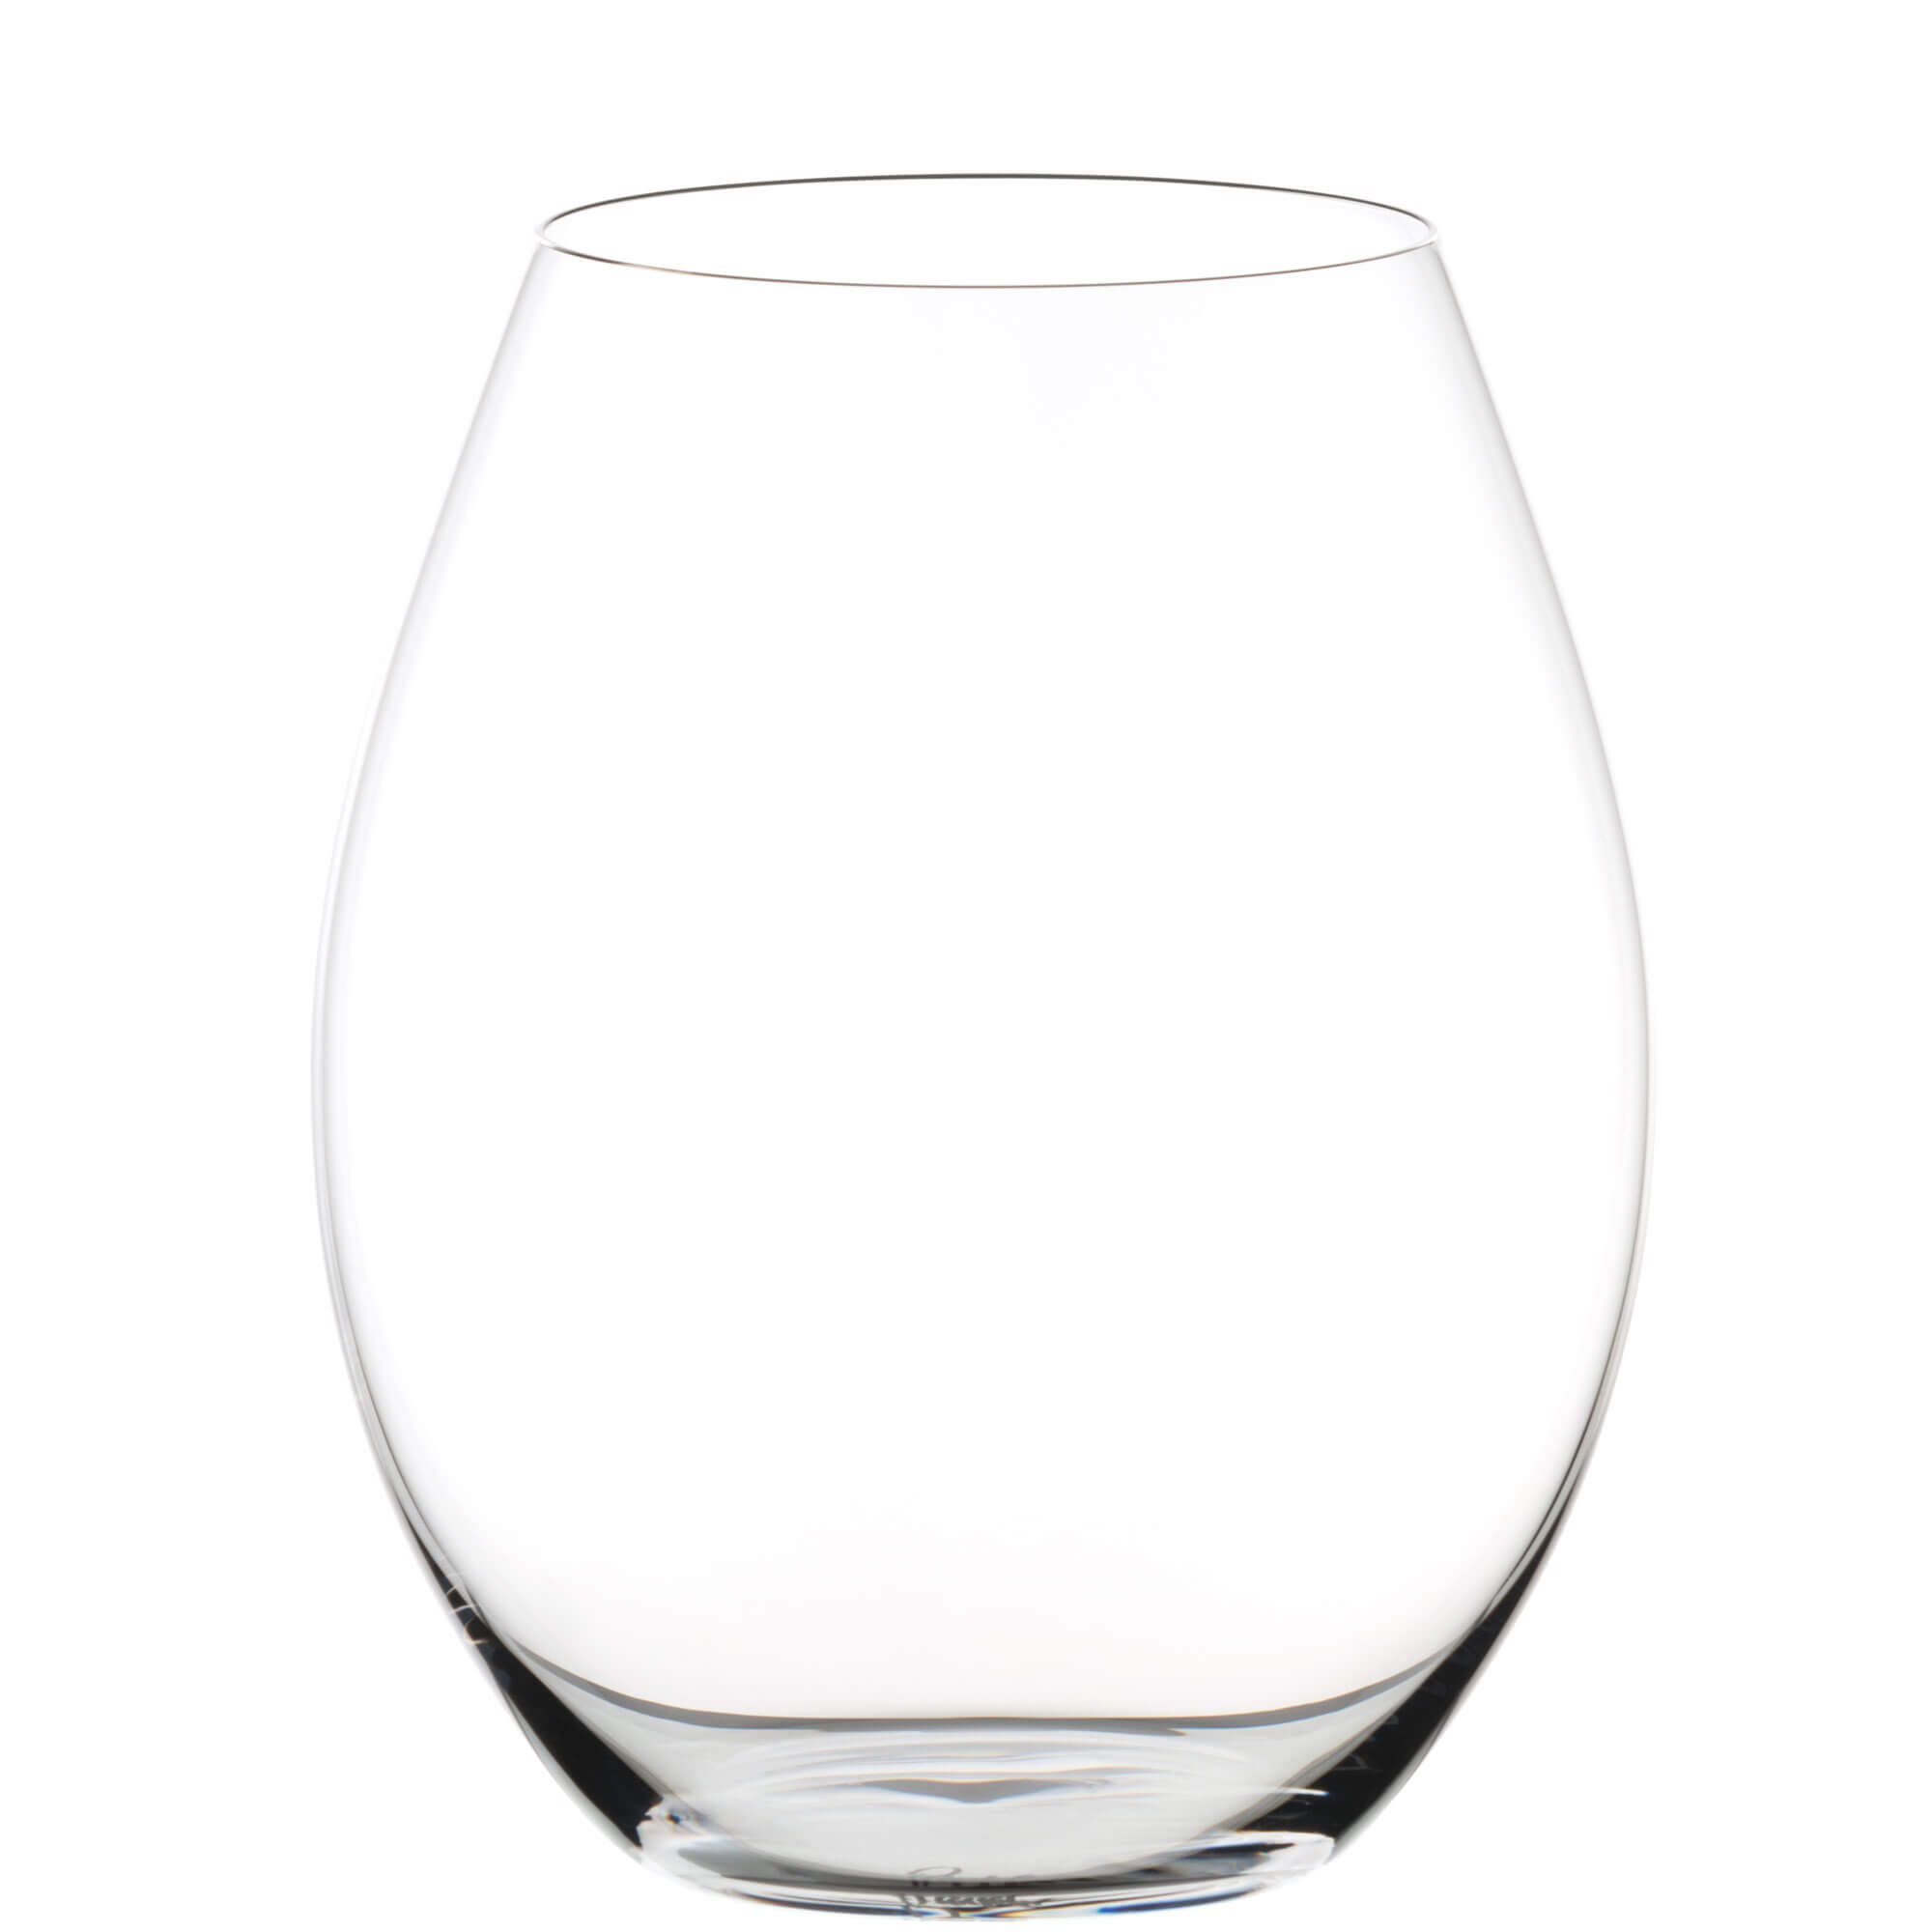 Alte Welt Syrah Glas Riedel O - 570ml (2 Stk.)